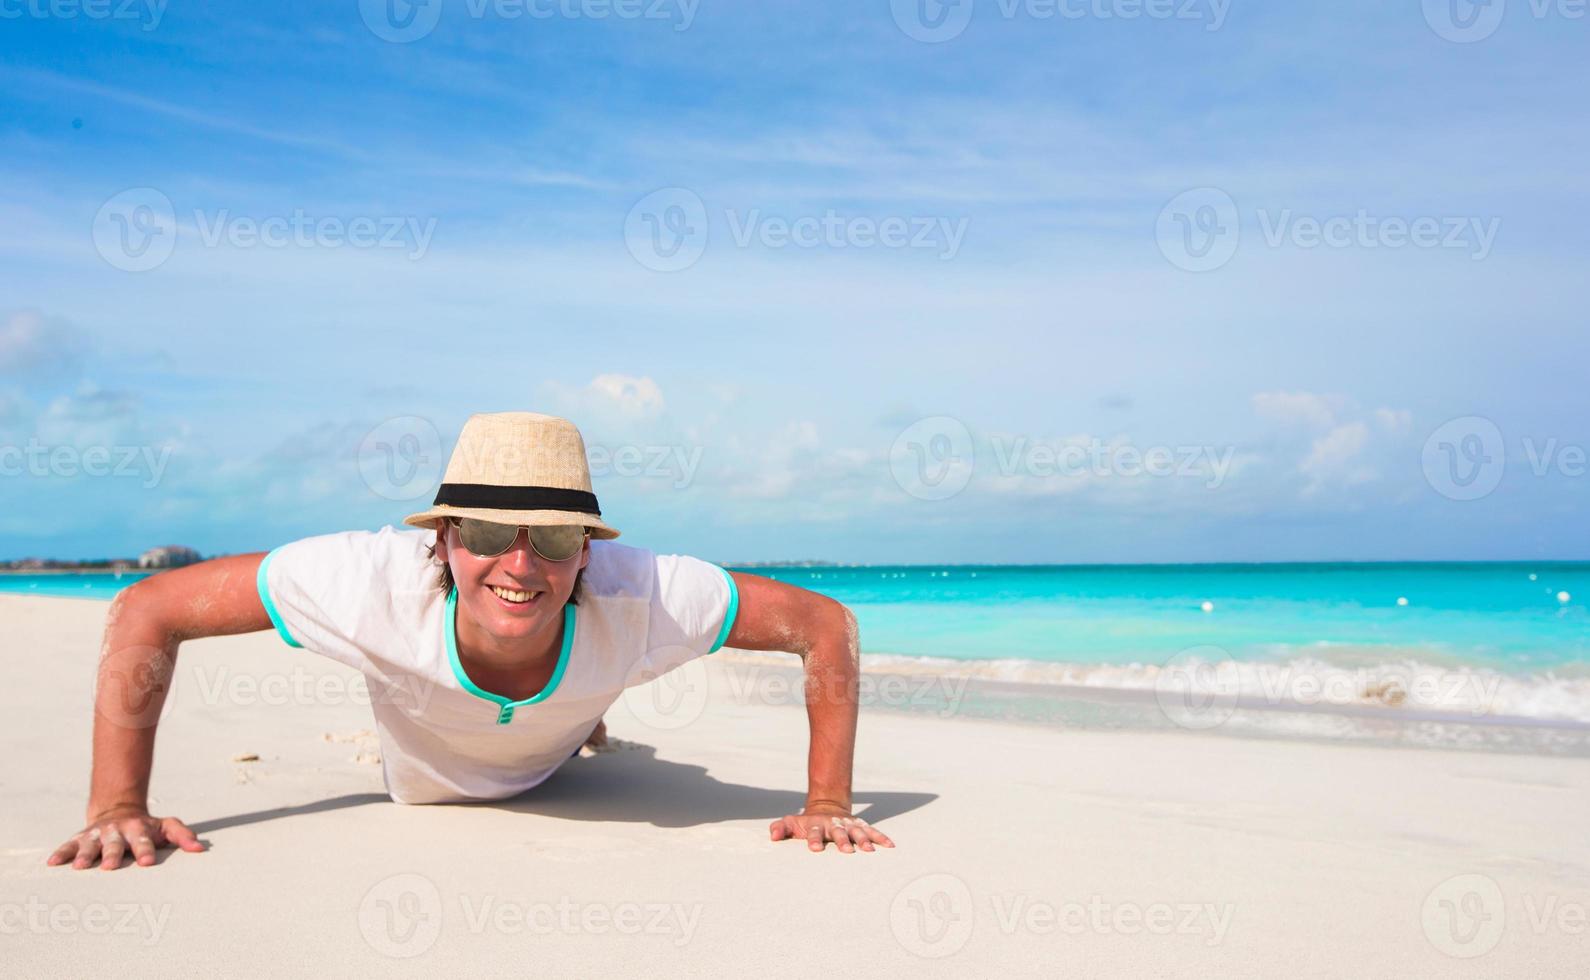 jeune homme faisant des pompes sur une plage de sable photo